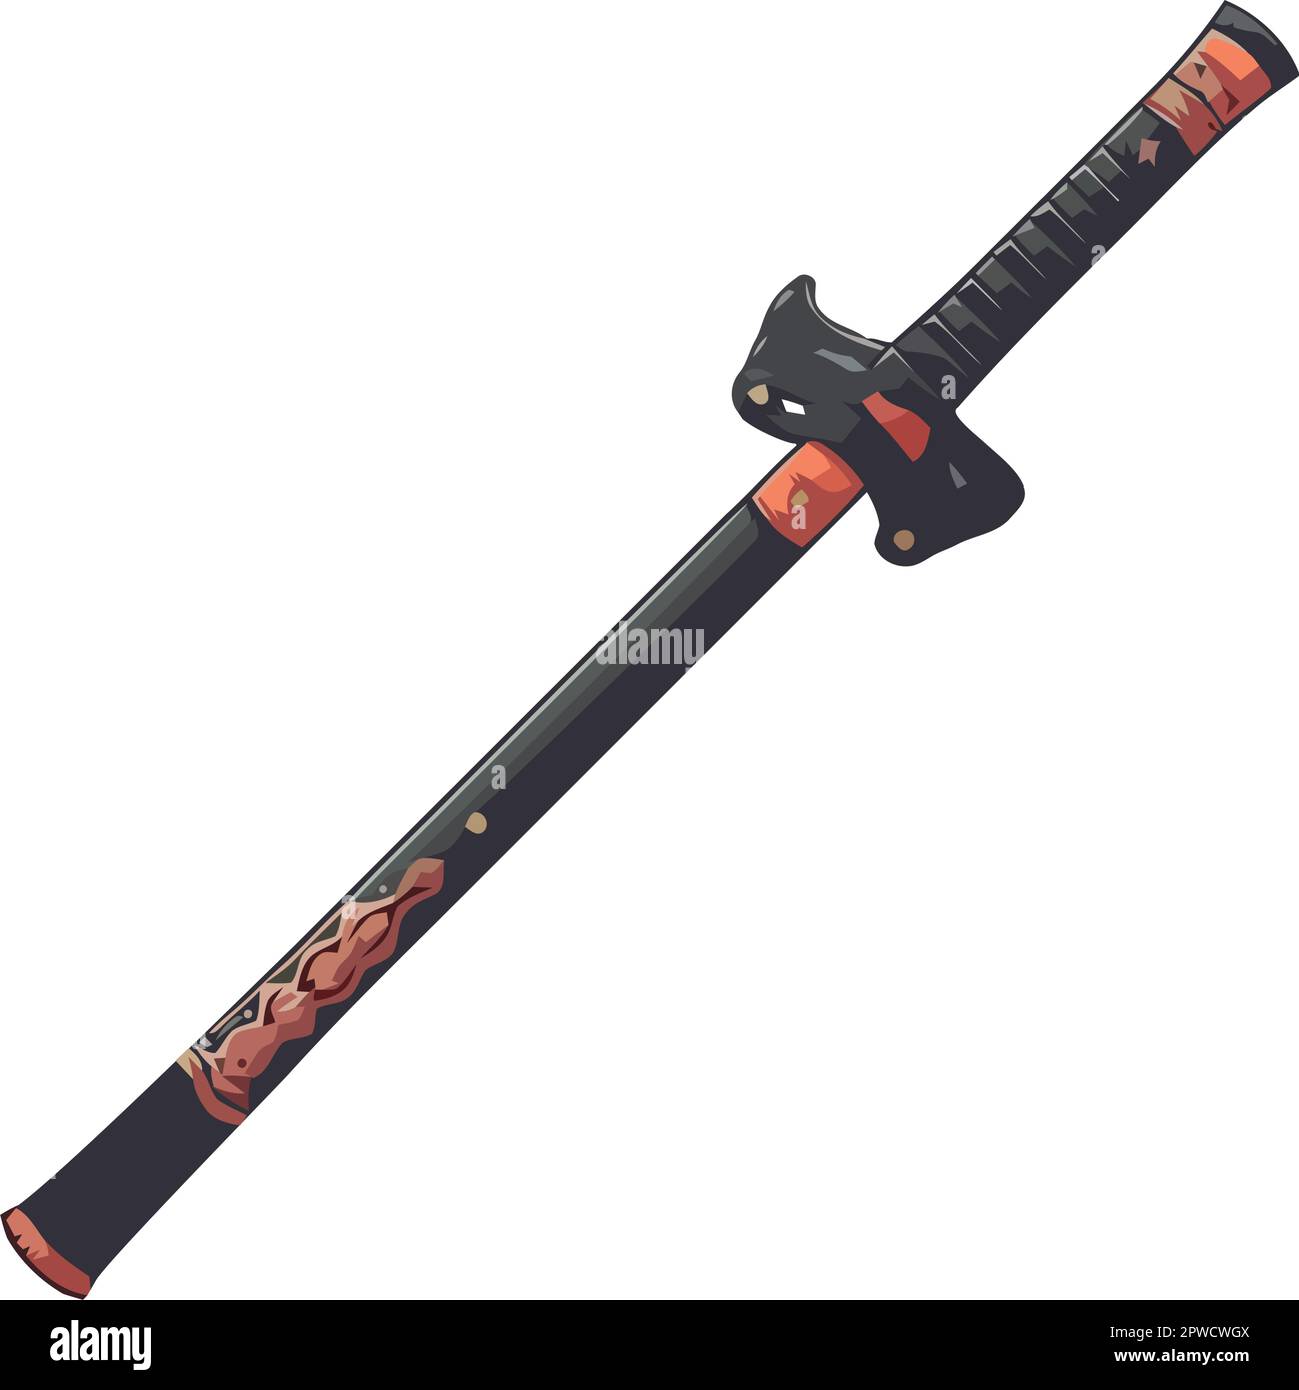 Ein Samurai-Schwert, eine alte Waffe japanischer Kultur Stock-Vektorgrafik  - Alamy